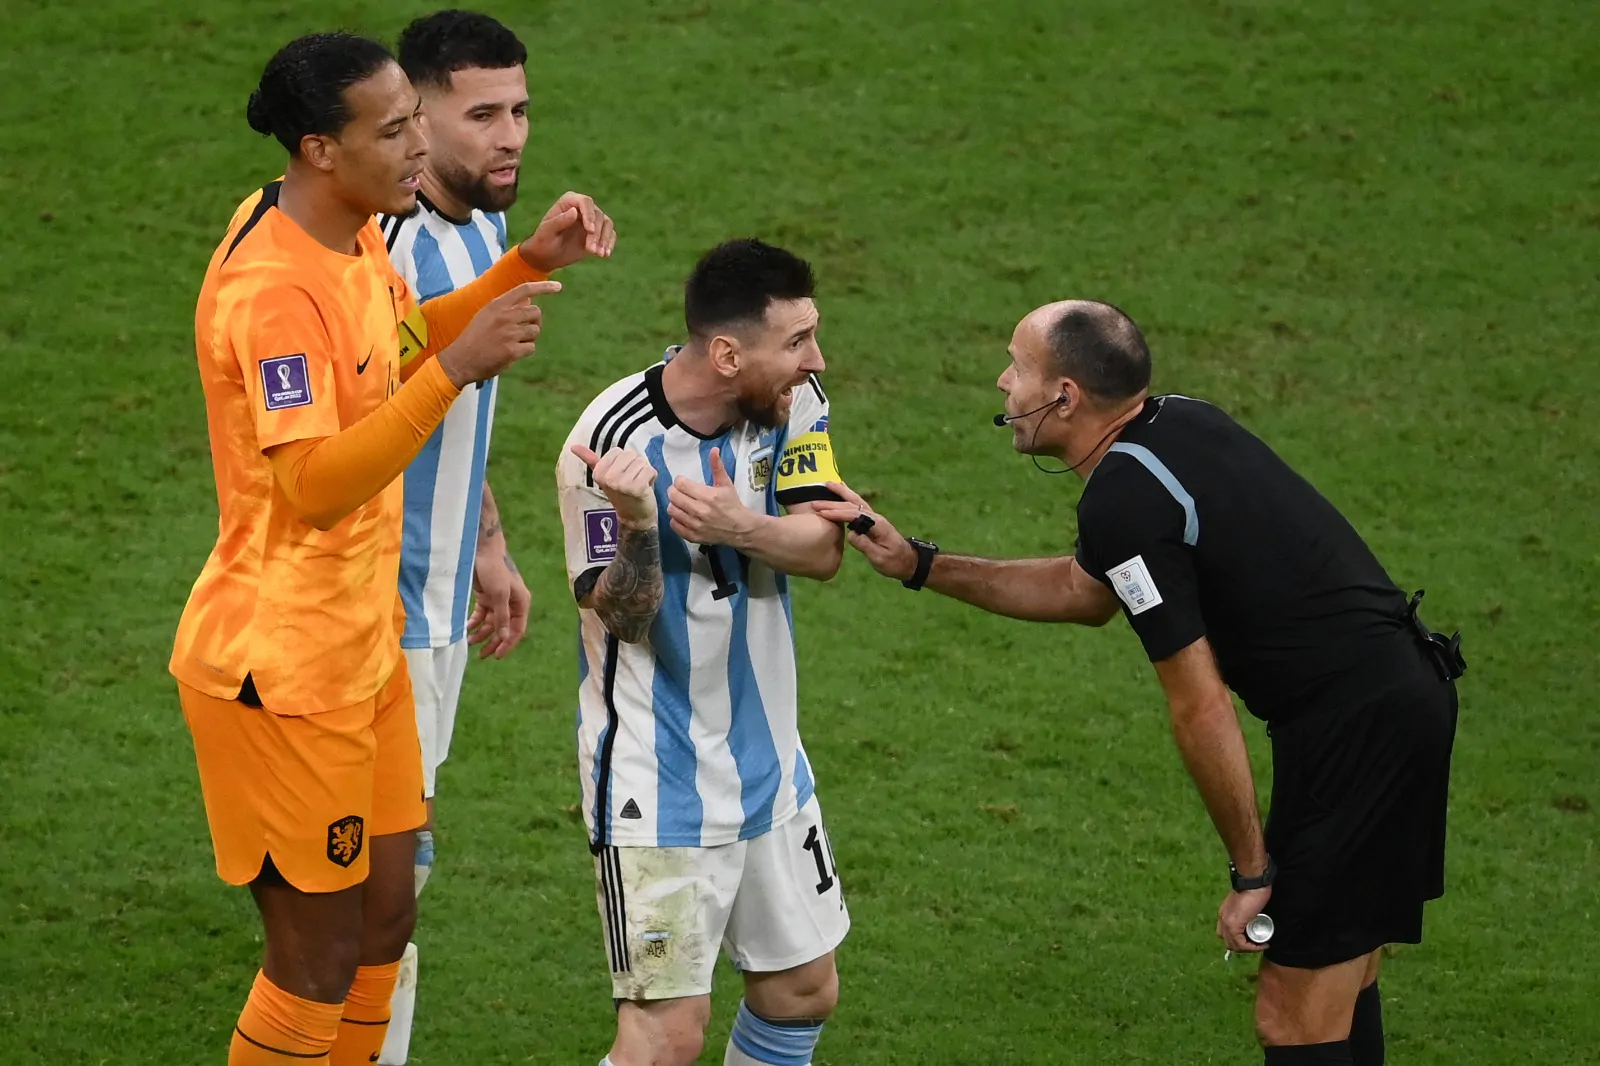 L’Argentina perde il proprio speaker ufficiale a causa di un video contro la FIFA: l’episodio